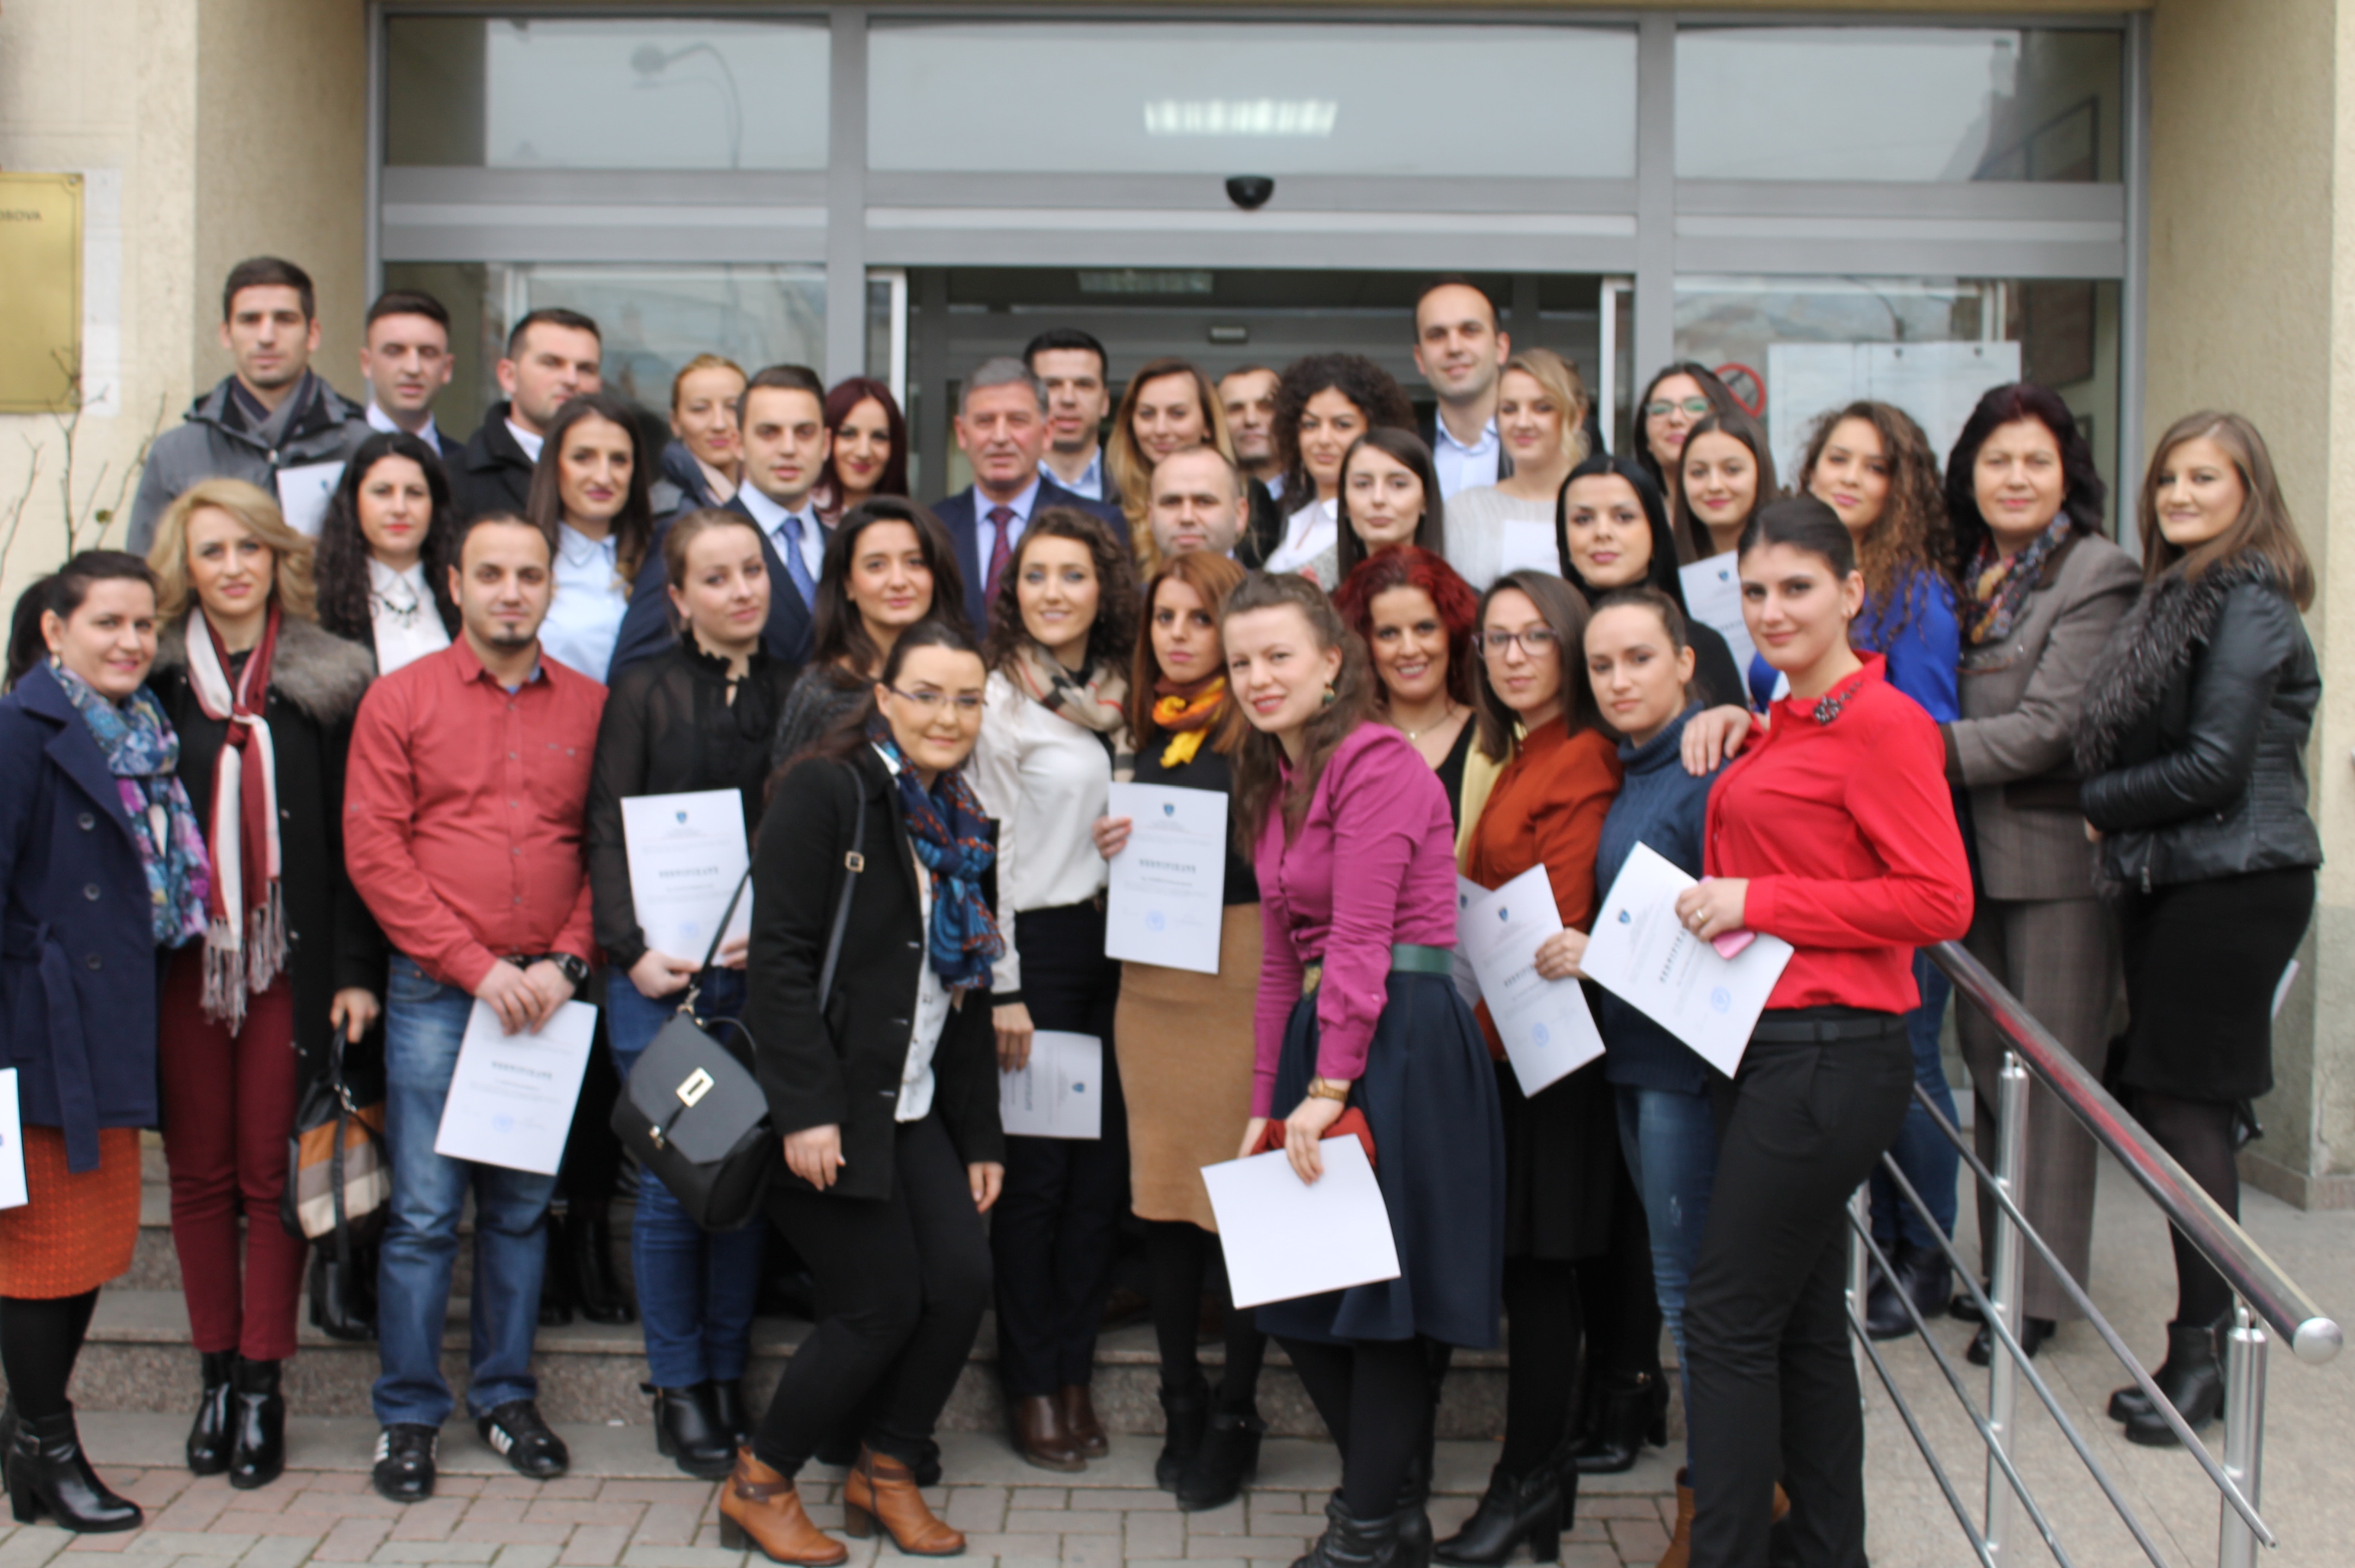 Tridhjetetetë(38) praktikantë përfunduan praktikën në Gjykatën Themelore të Prizrenit